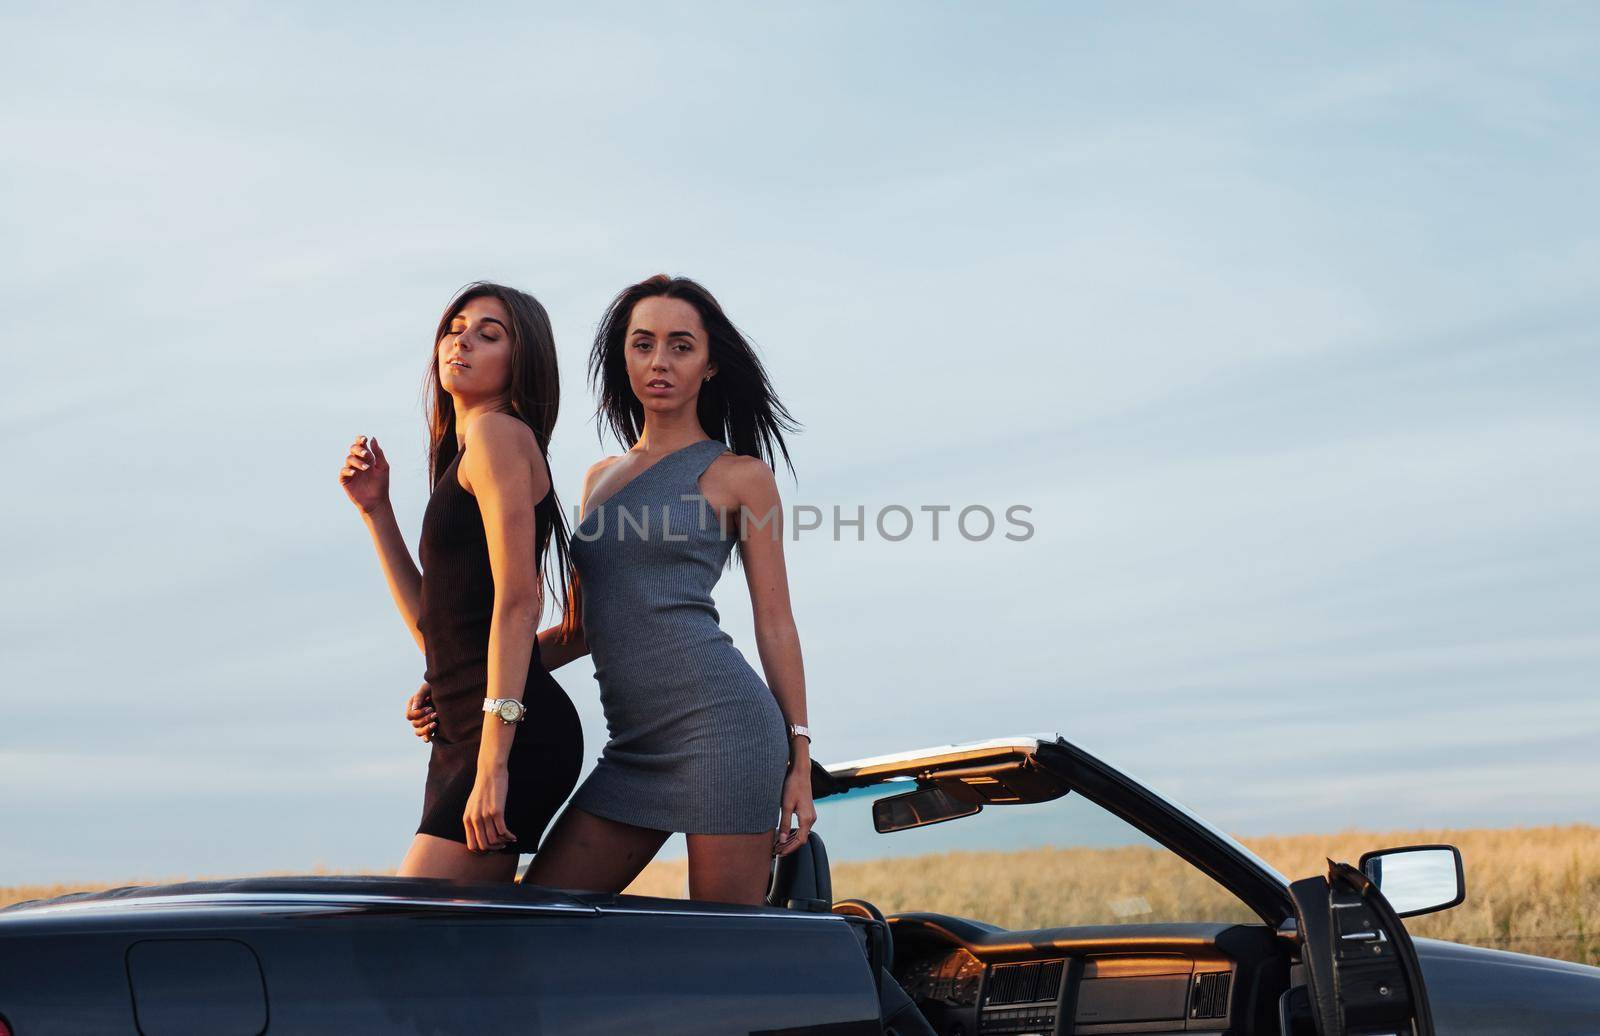 Two women in a black car on the roadside roads.